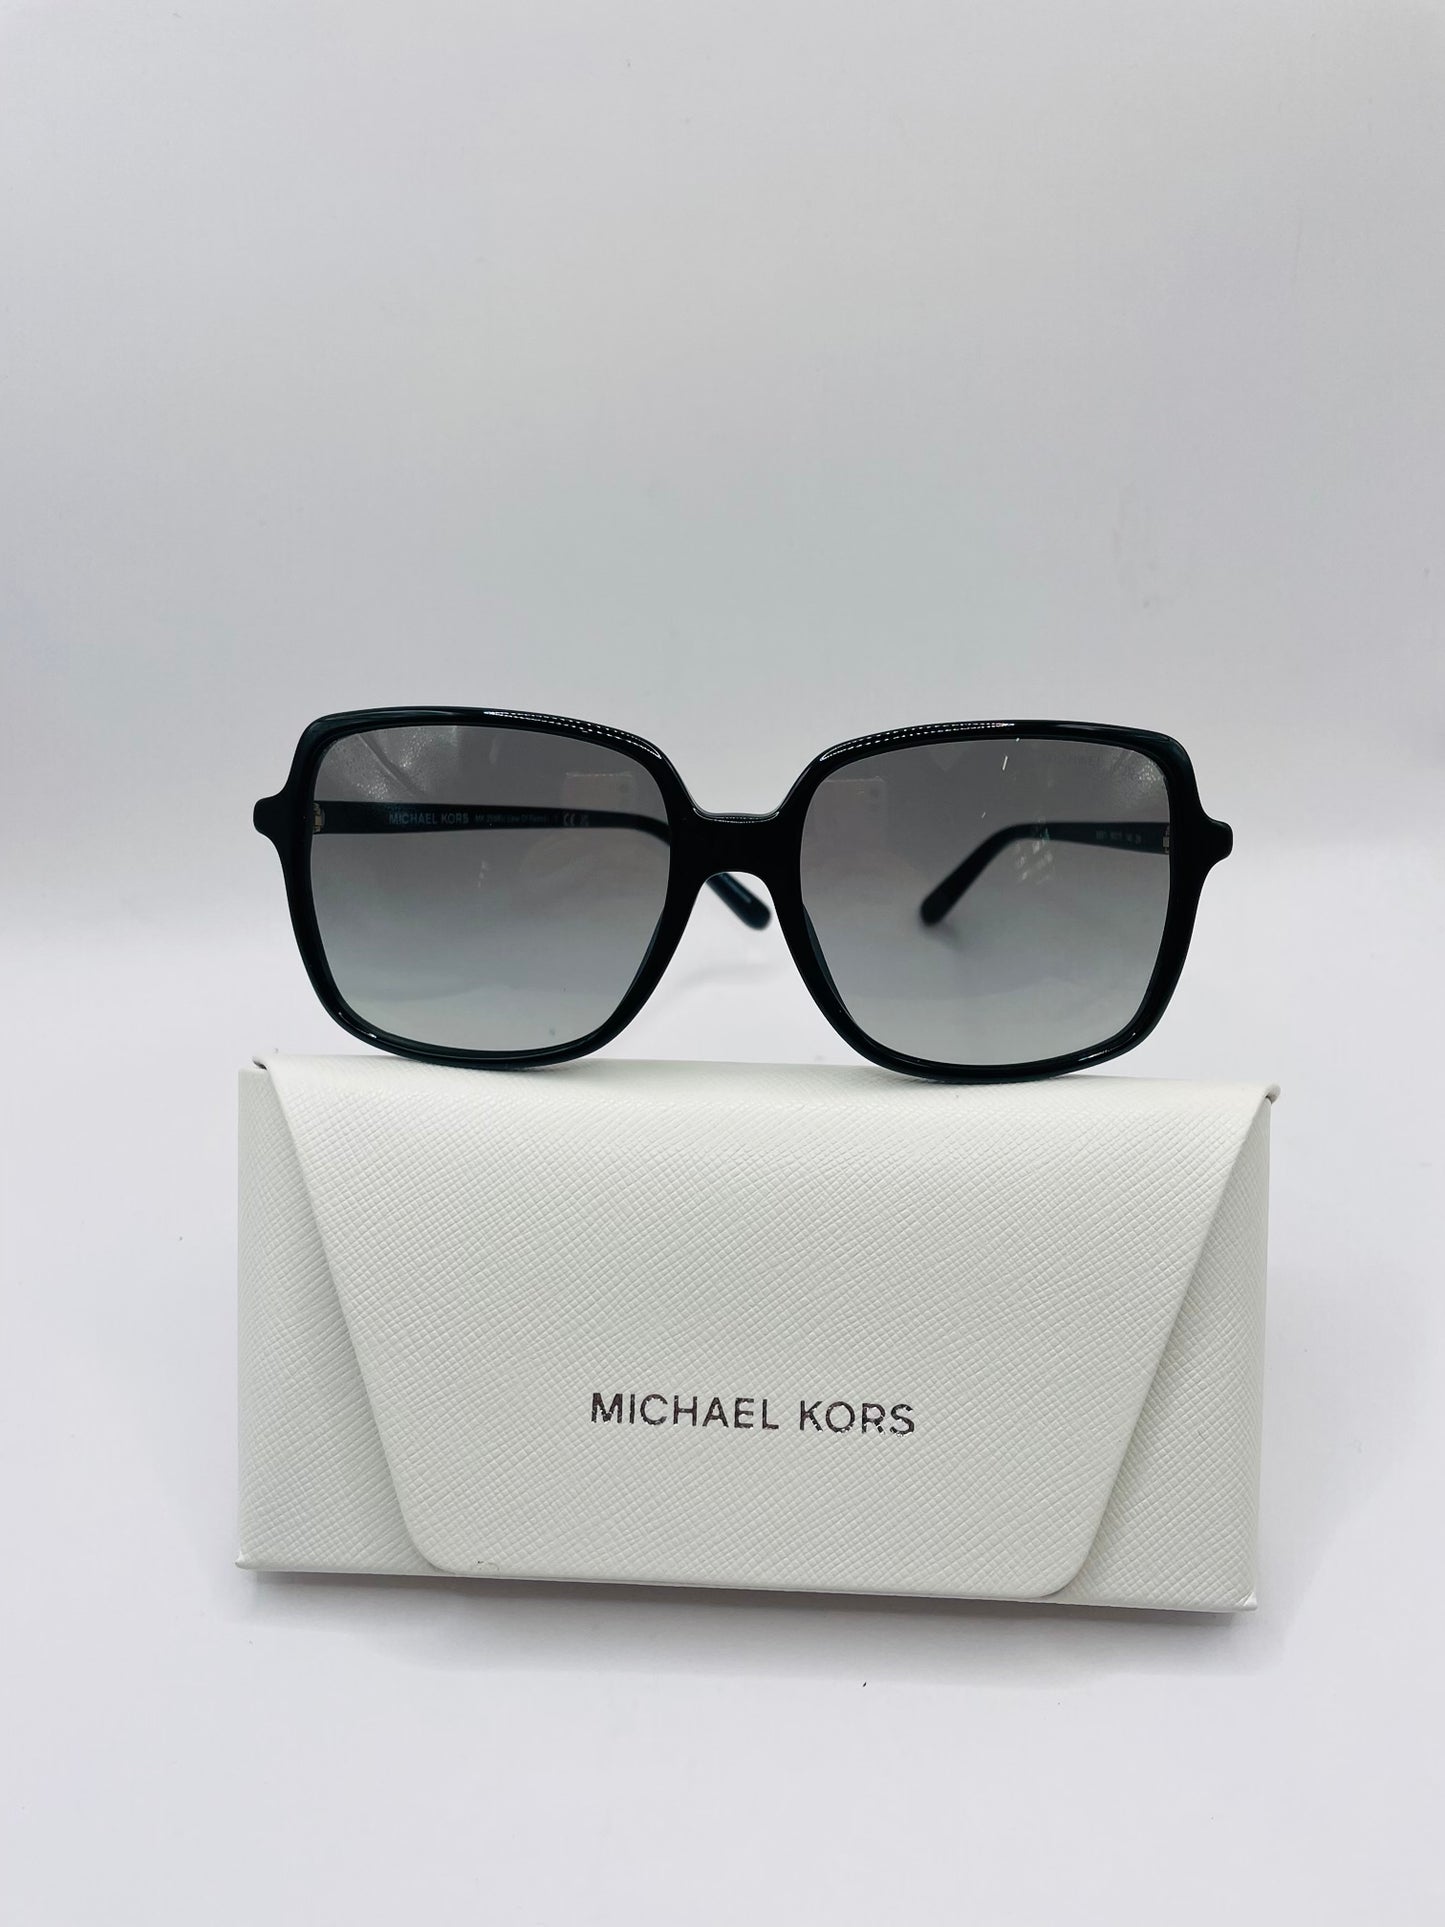 Michael kors sunglass